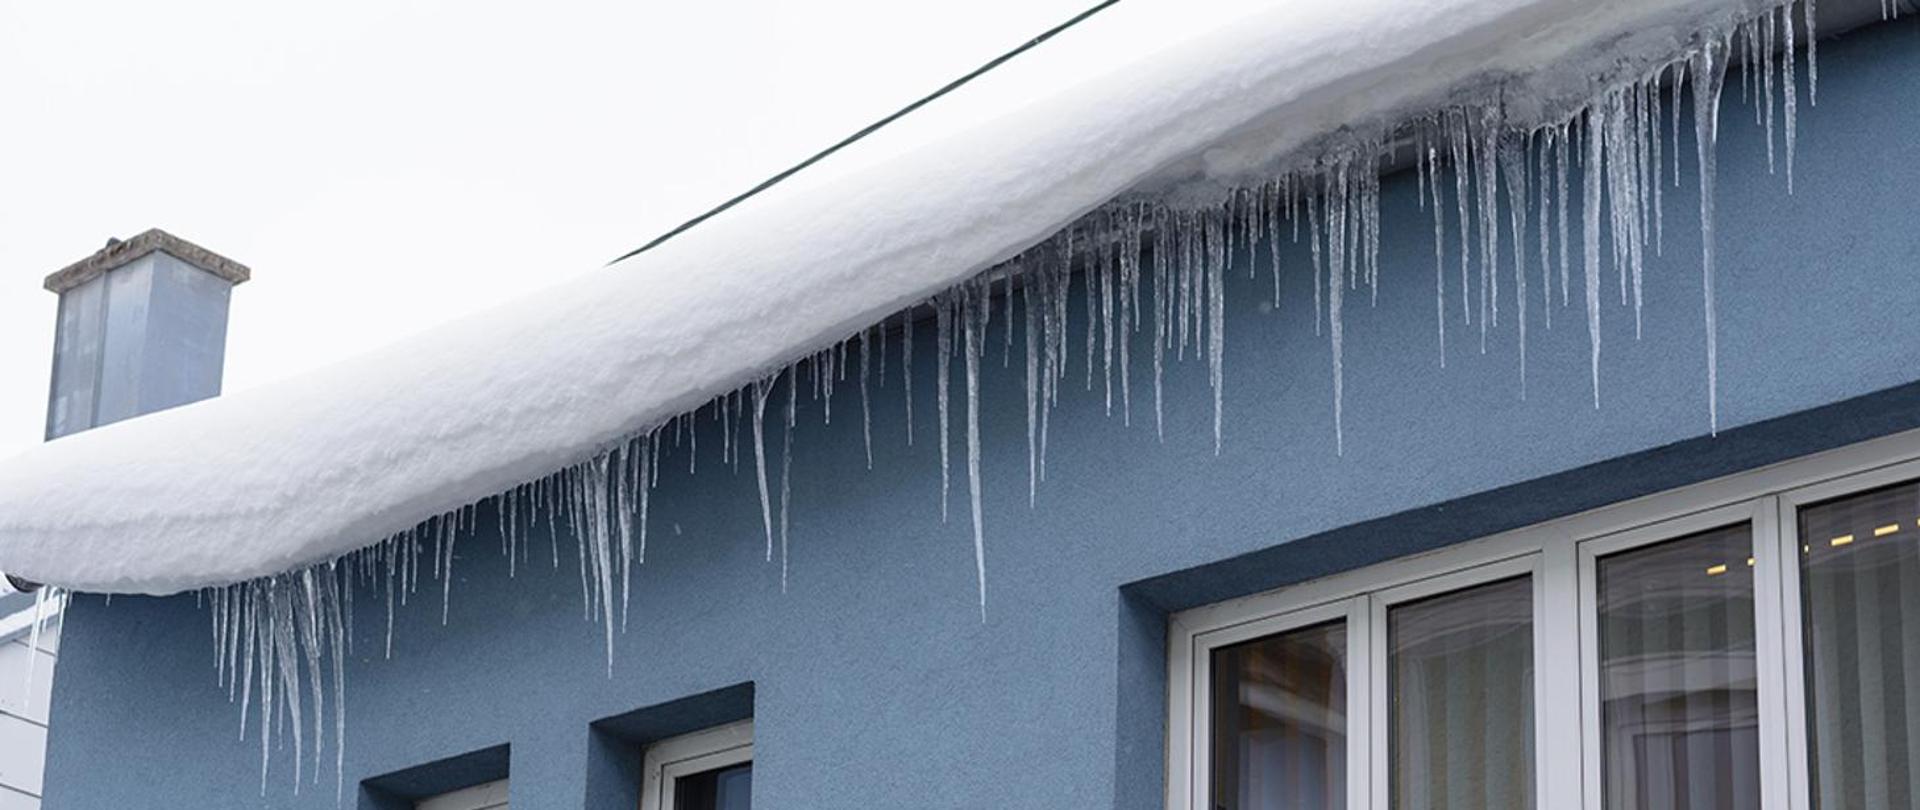 `Zdjęcie przedstawia śnieg na dachu zagrażający m.in. przechodniom i stateczności budynku